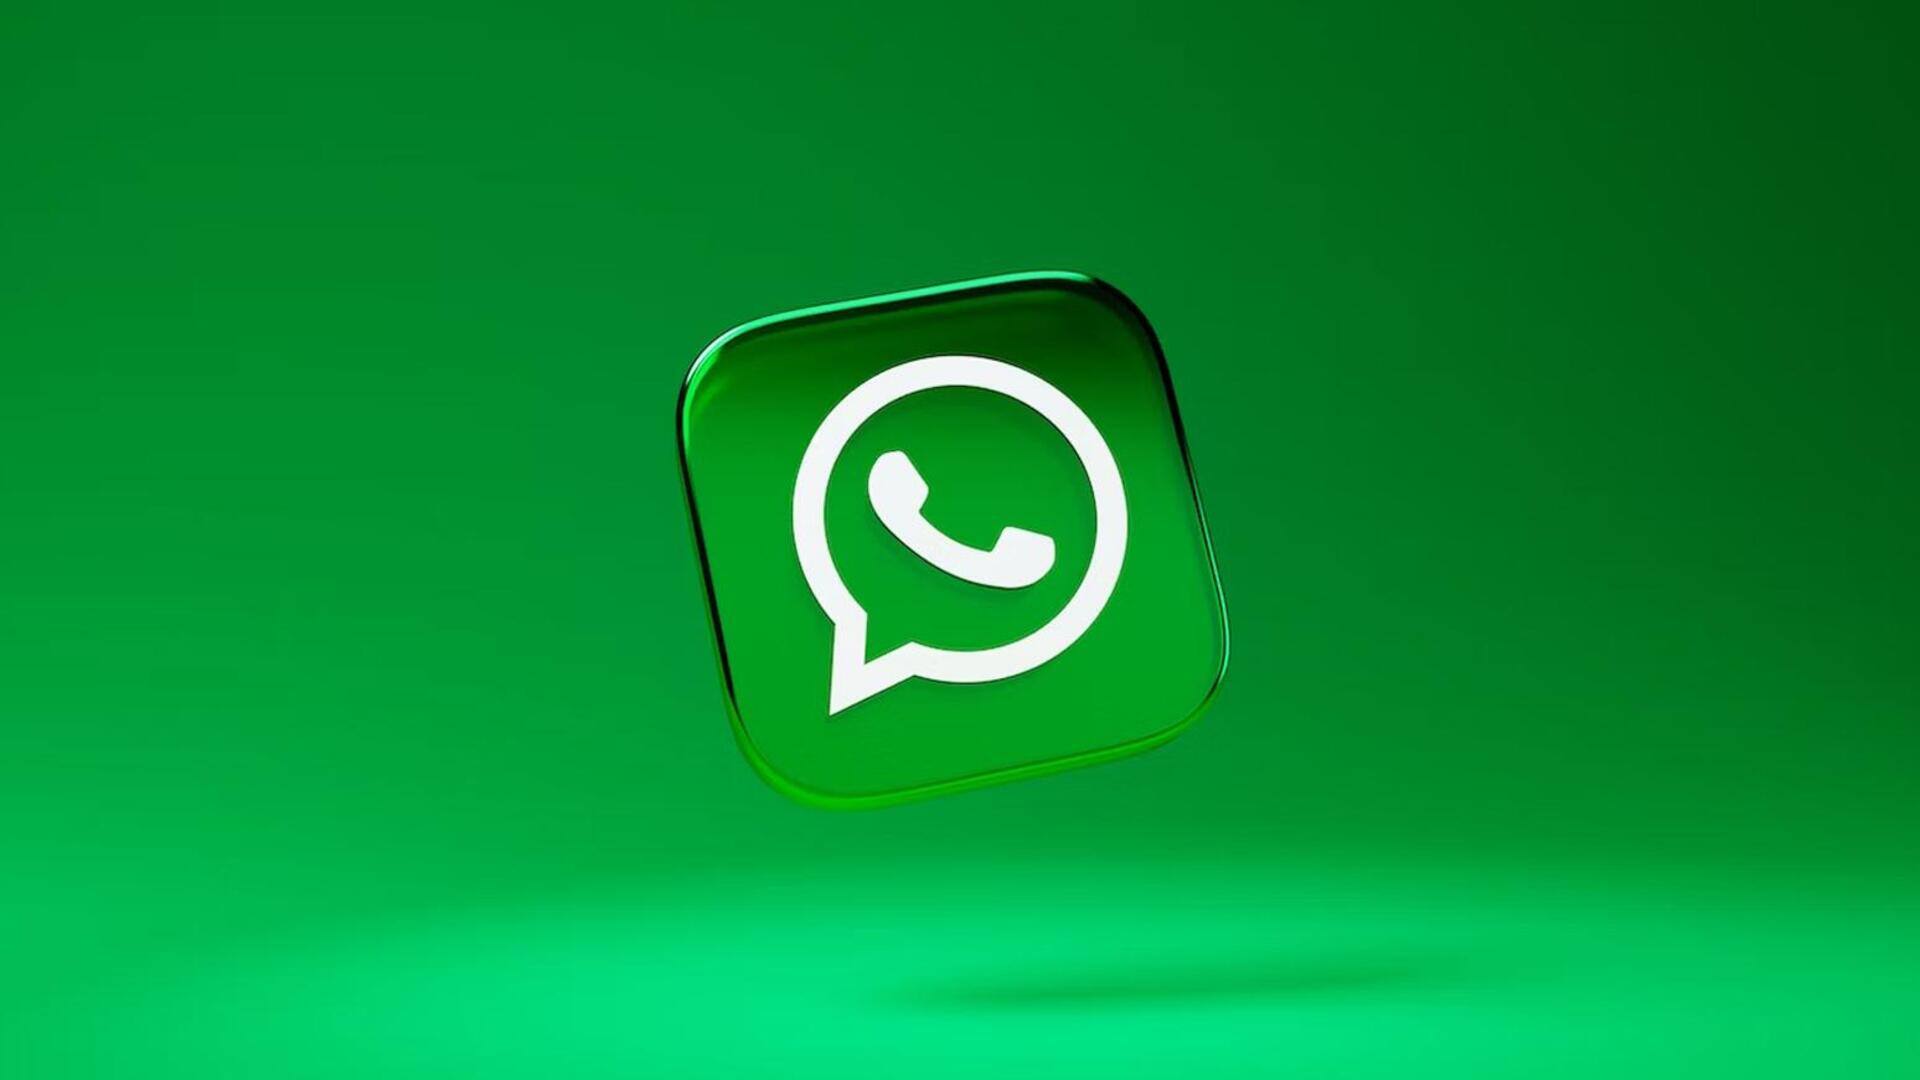 व्हाट्सऐप ने जारी किया वीडियो अवतार कॉलिंग फीचर, जानिए कैसे करें उपयोग